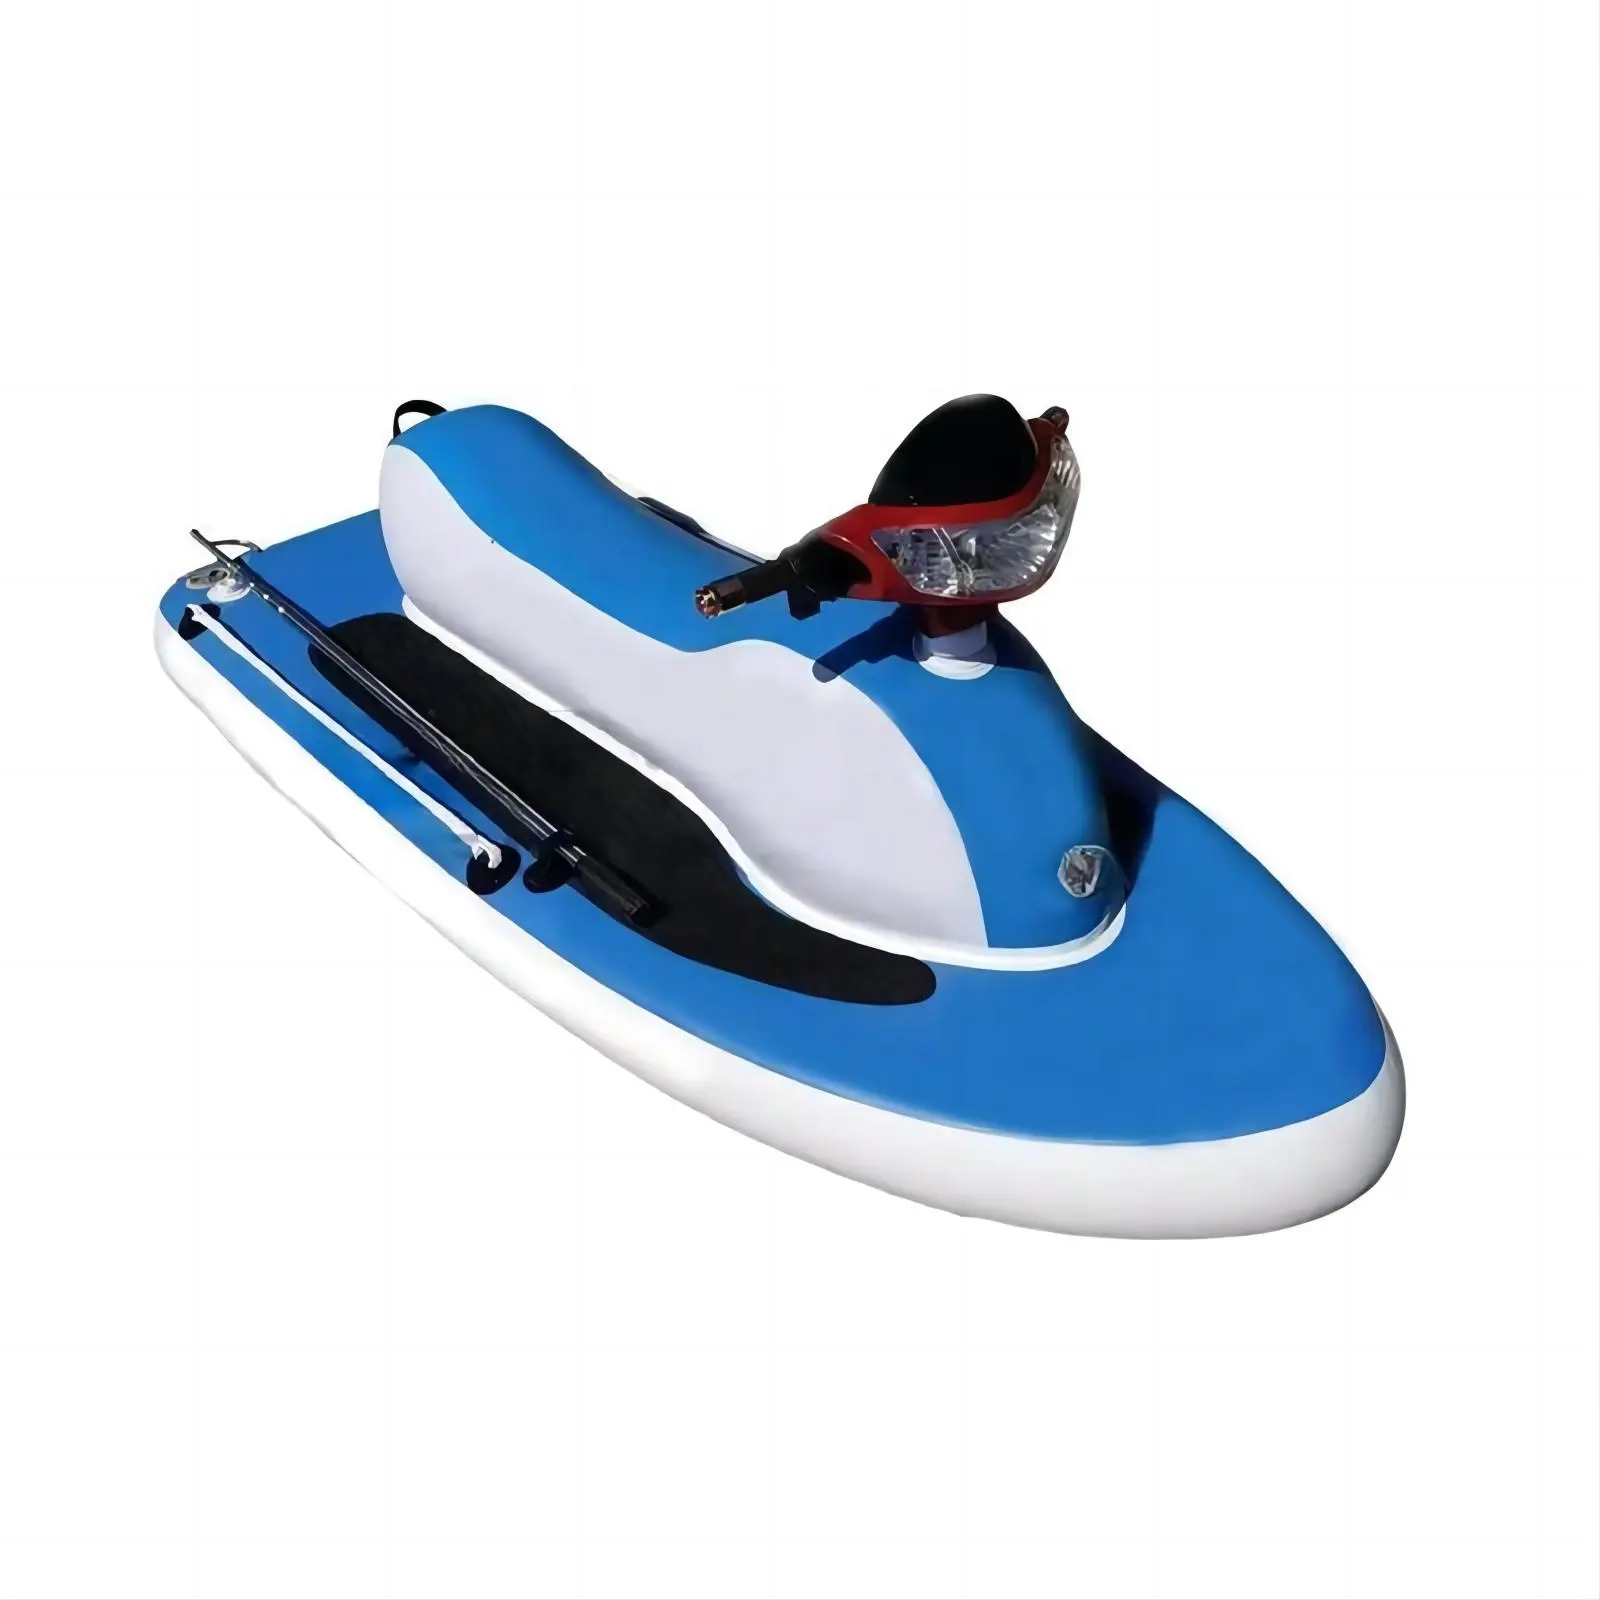 Moto cruiser portable bon marché de jet-ski gonflable avec le bateau à moteur gonflable de flotteur gonflable de puissance pour le lac et l'océan